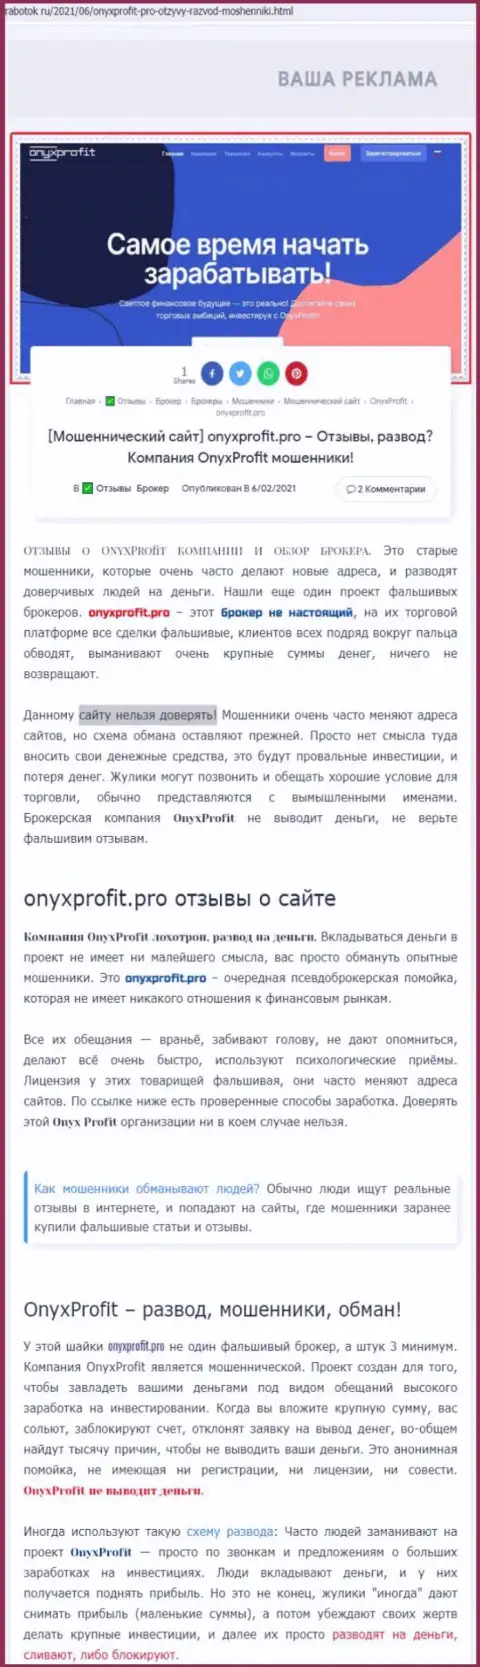 Уловки от организации OnyxProfit, обзор